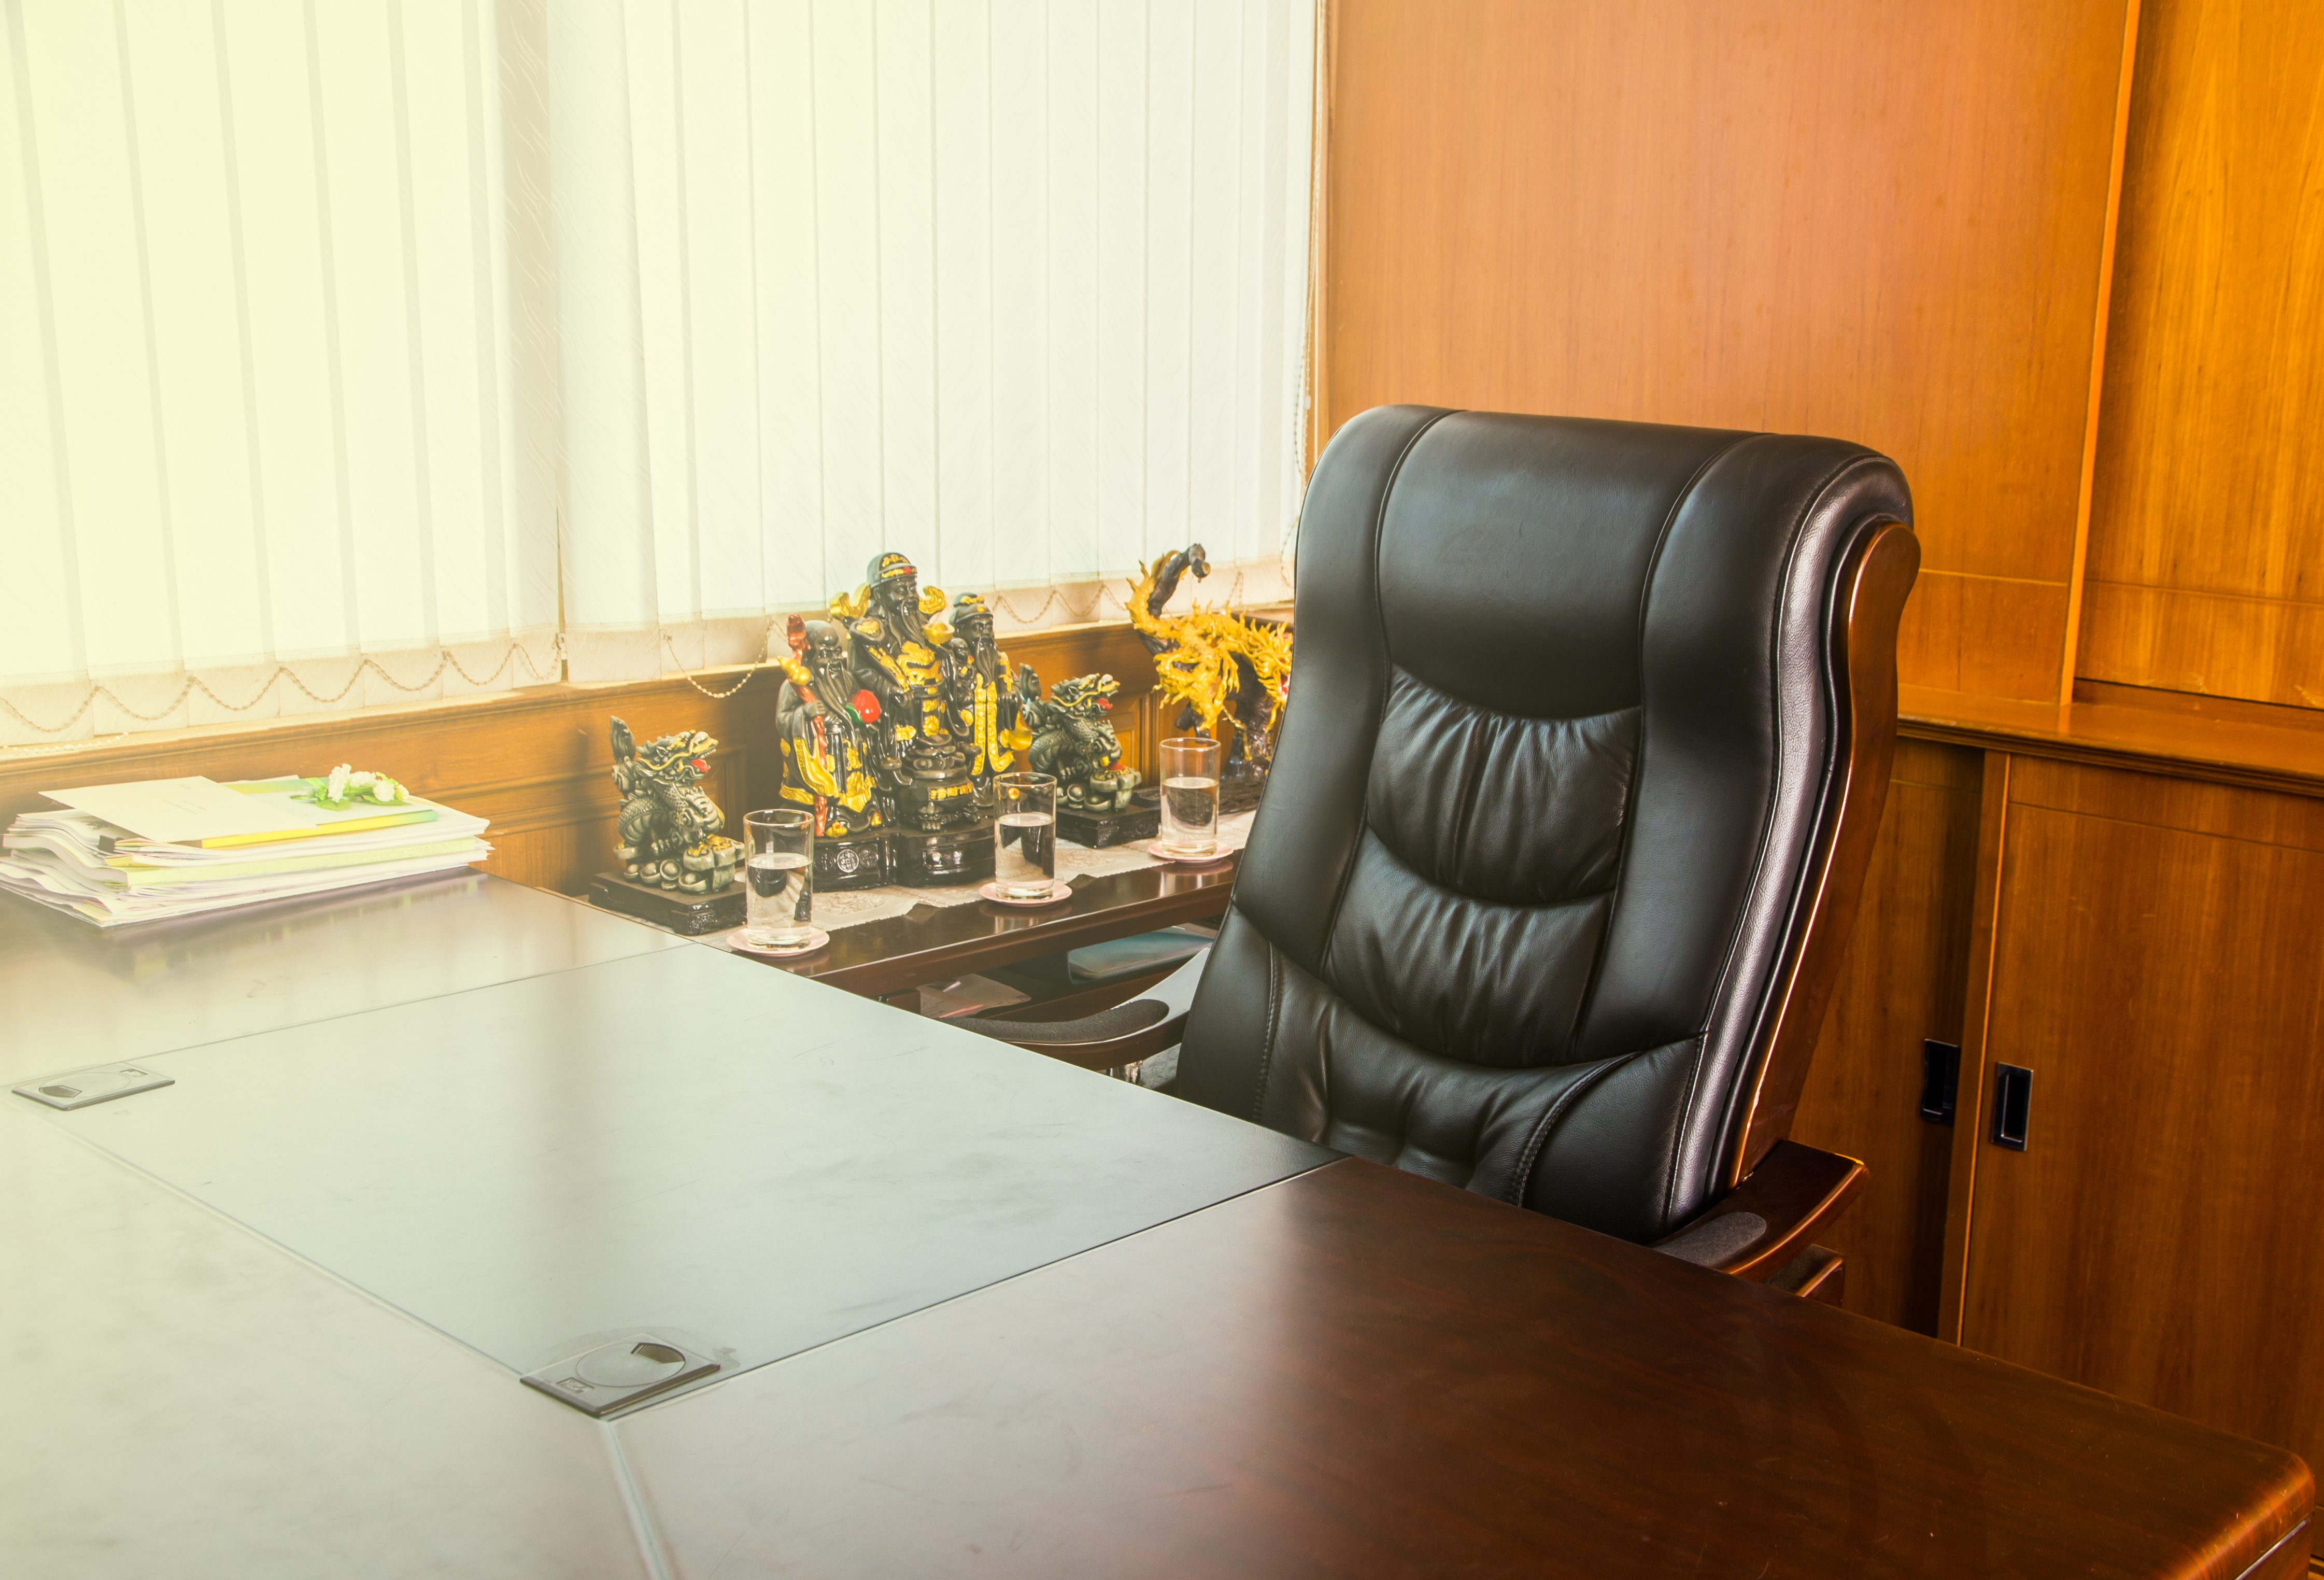 Poste de travail vide dans un bureau | Source : Shutterstock